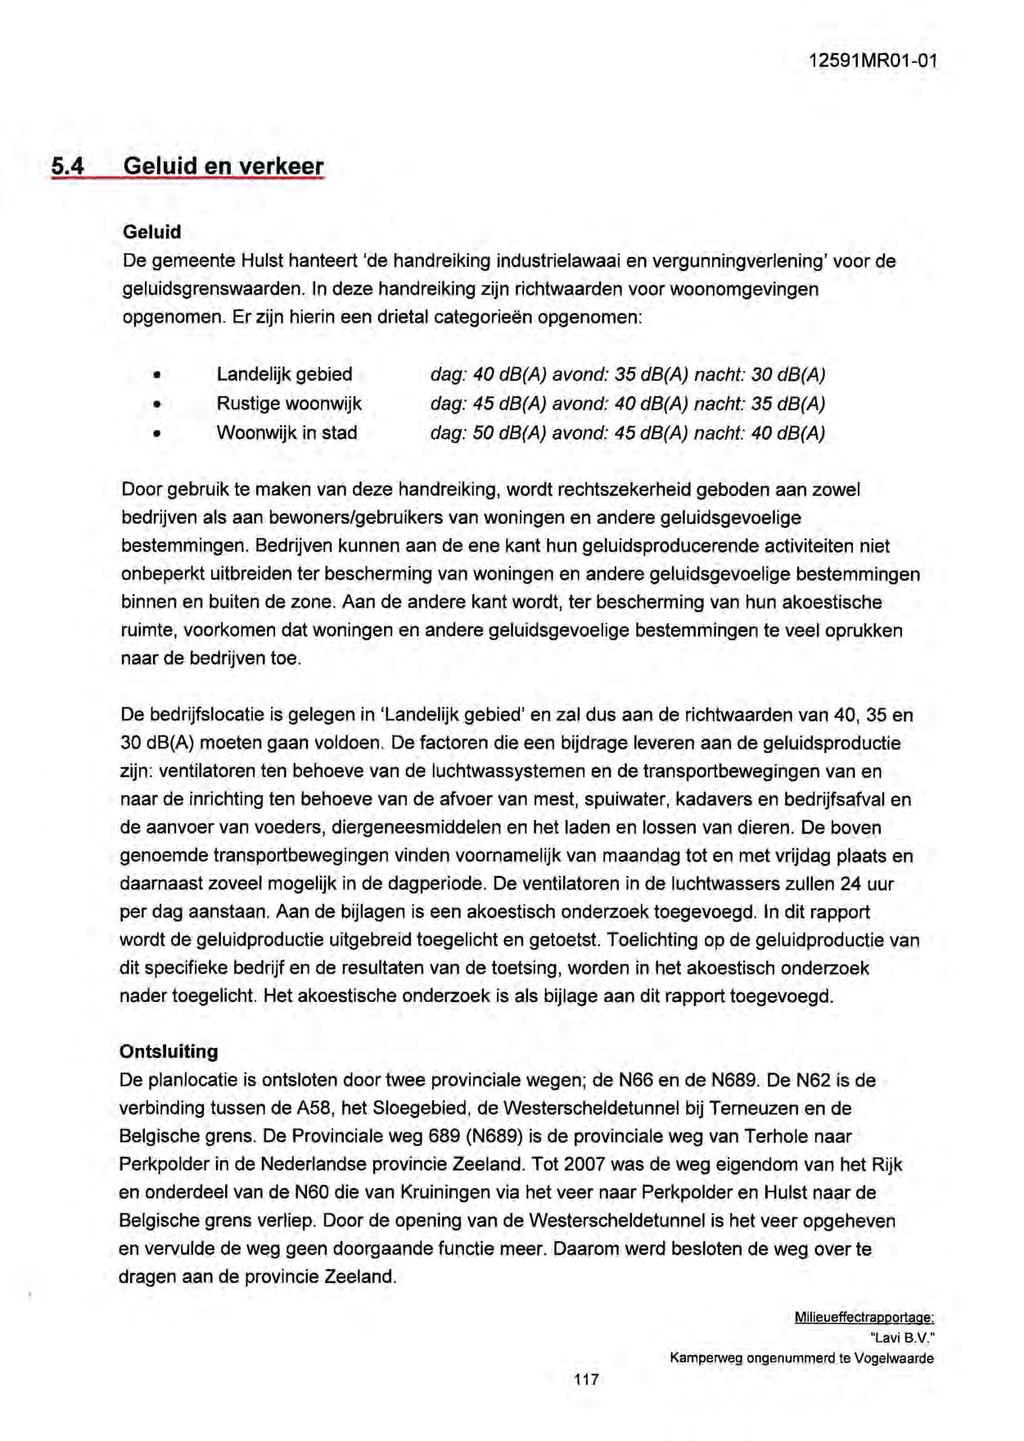 1291 MR01-01.4 Geluid en verkeer Geluid De gemeente Hulst hanteert 'de handreiking industrielawaai en vergunningverlening' voor de geluidsgrenswaarden.